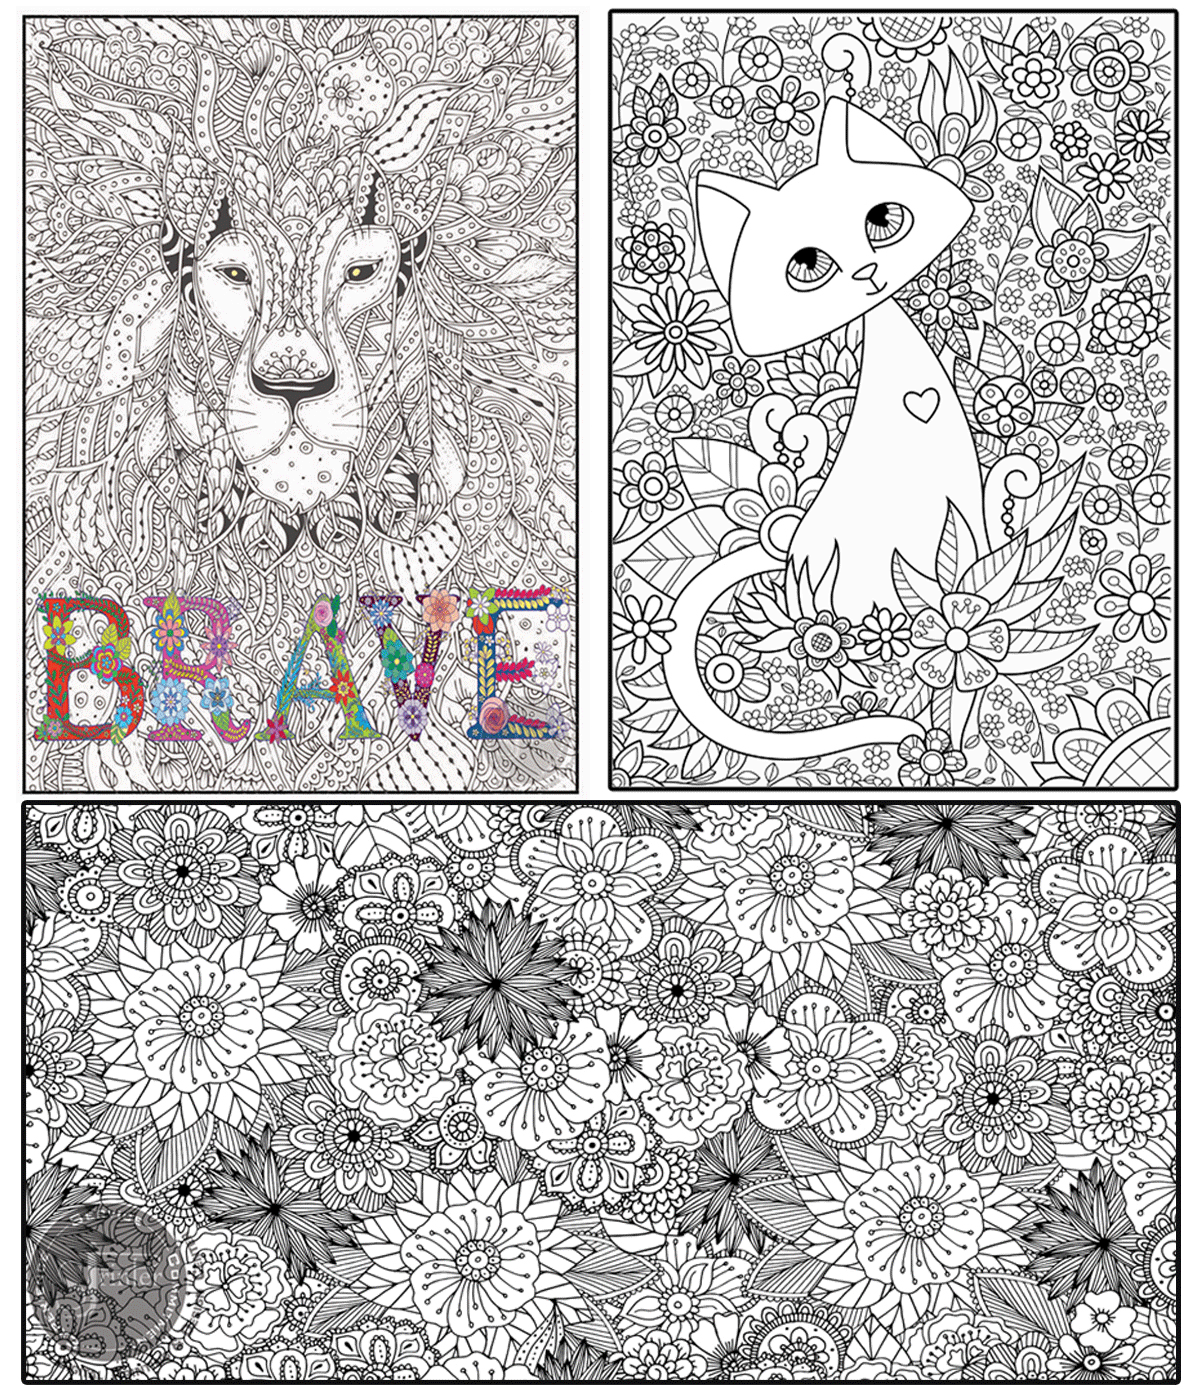 Cat/Brave/Flowers- 3 Posters for $64.99 - SJPrinter 